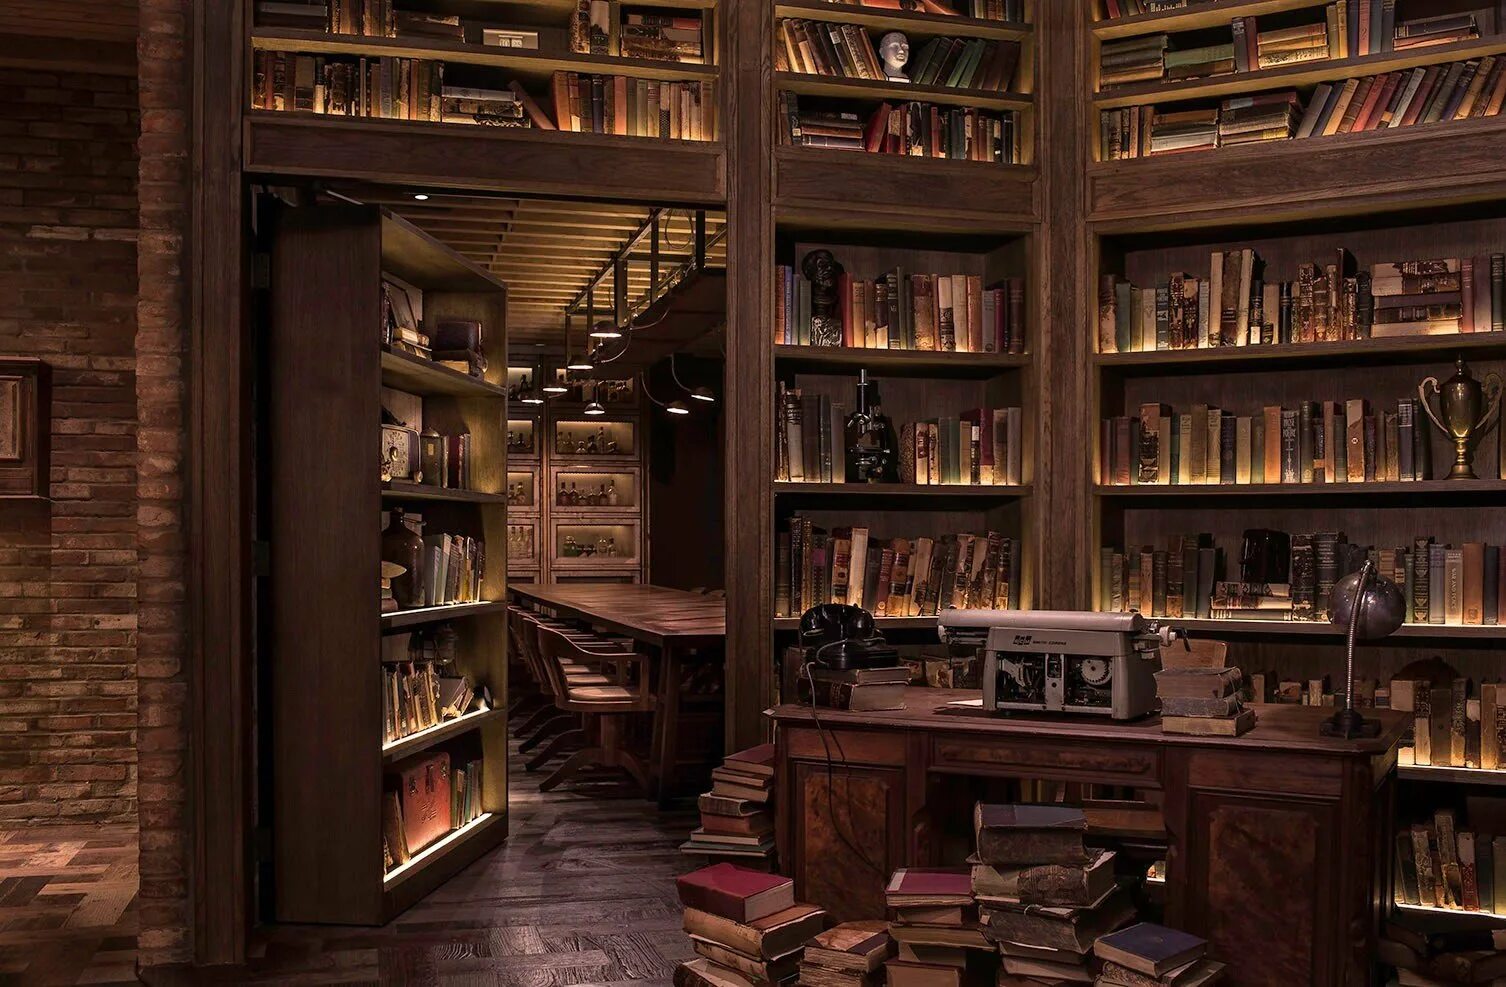 Библиотека без людей. Библиотека штата Айова, США. Комната с книжными полками. Интерьер с книжными полками.